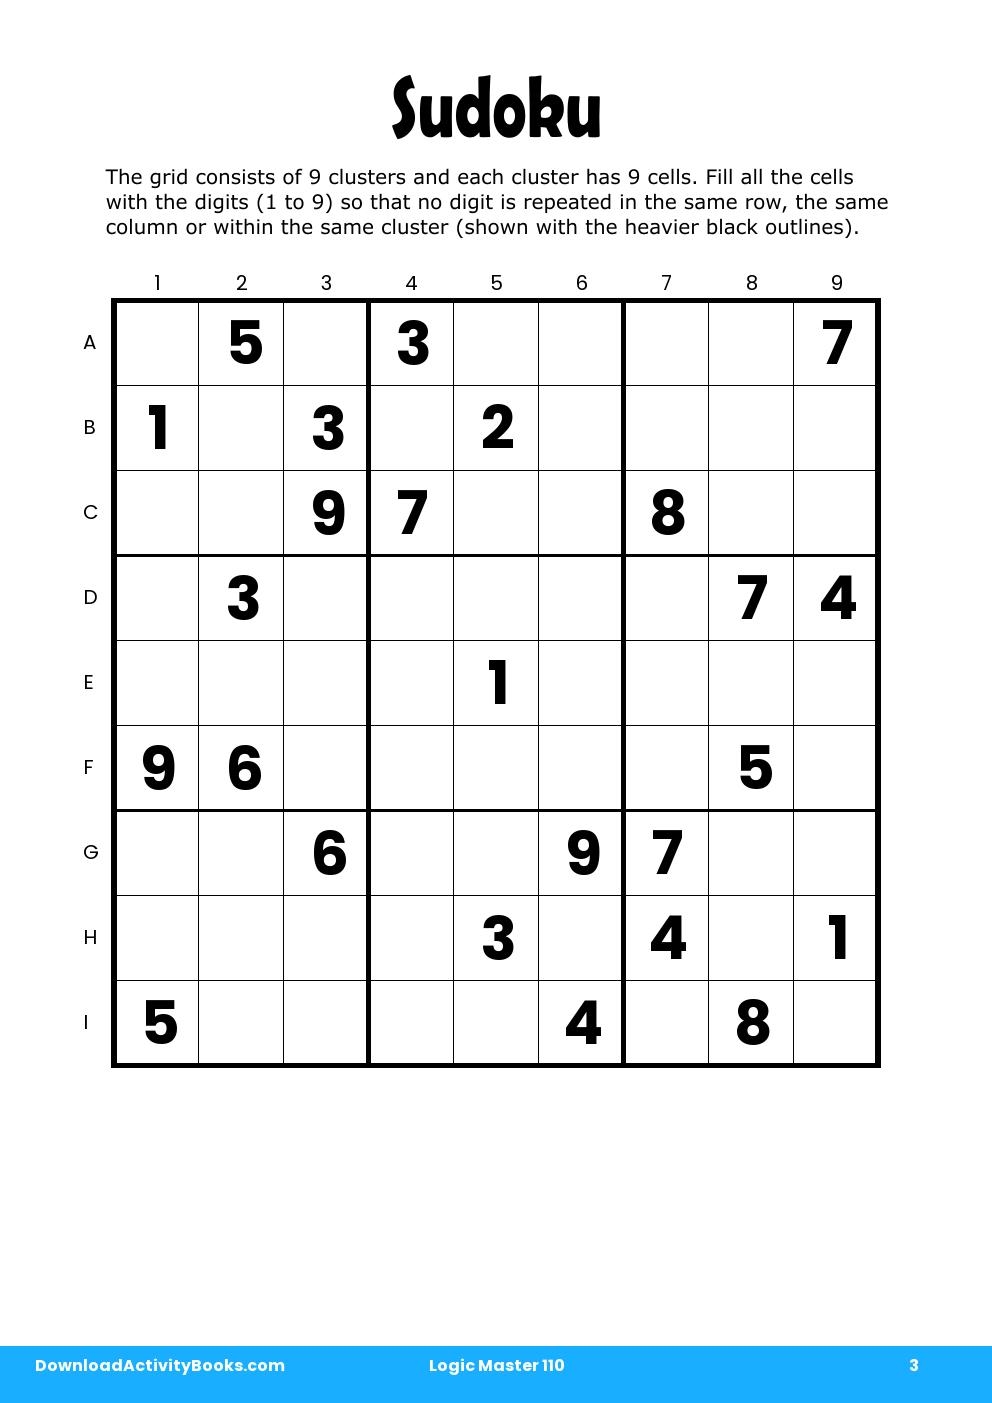 Sudoku in Logic Master 110